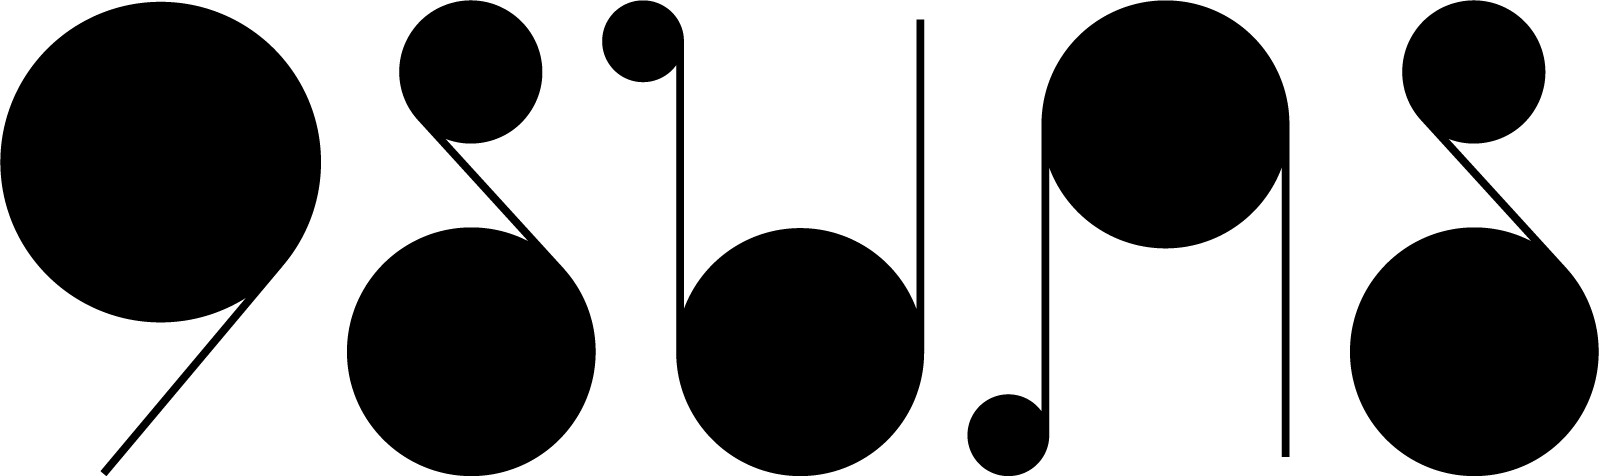 Nine Suns Logo